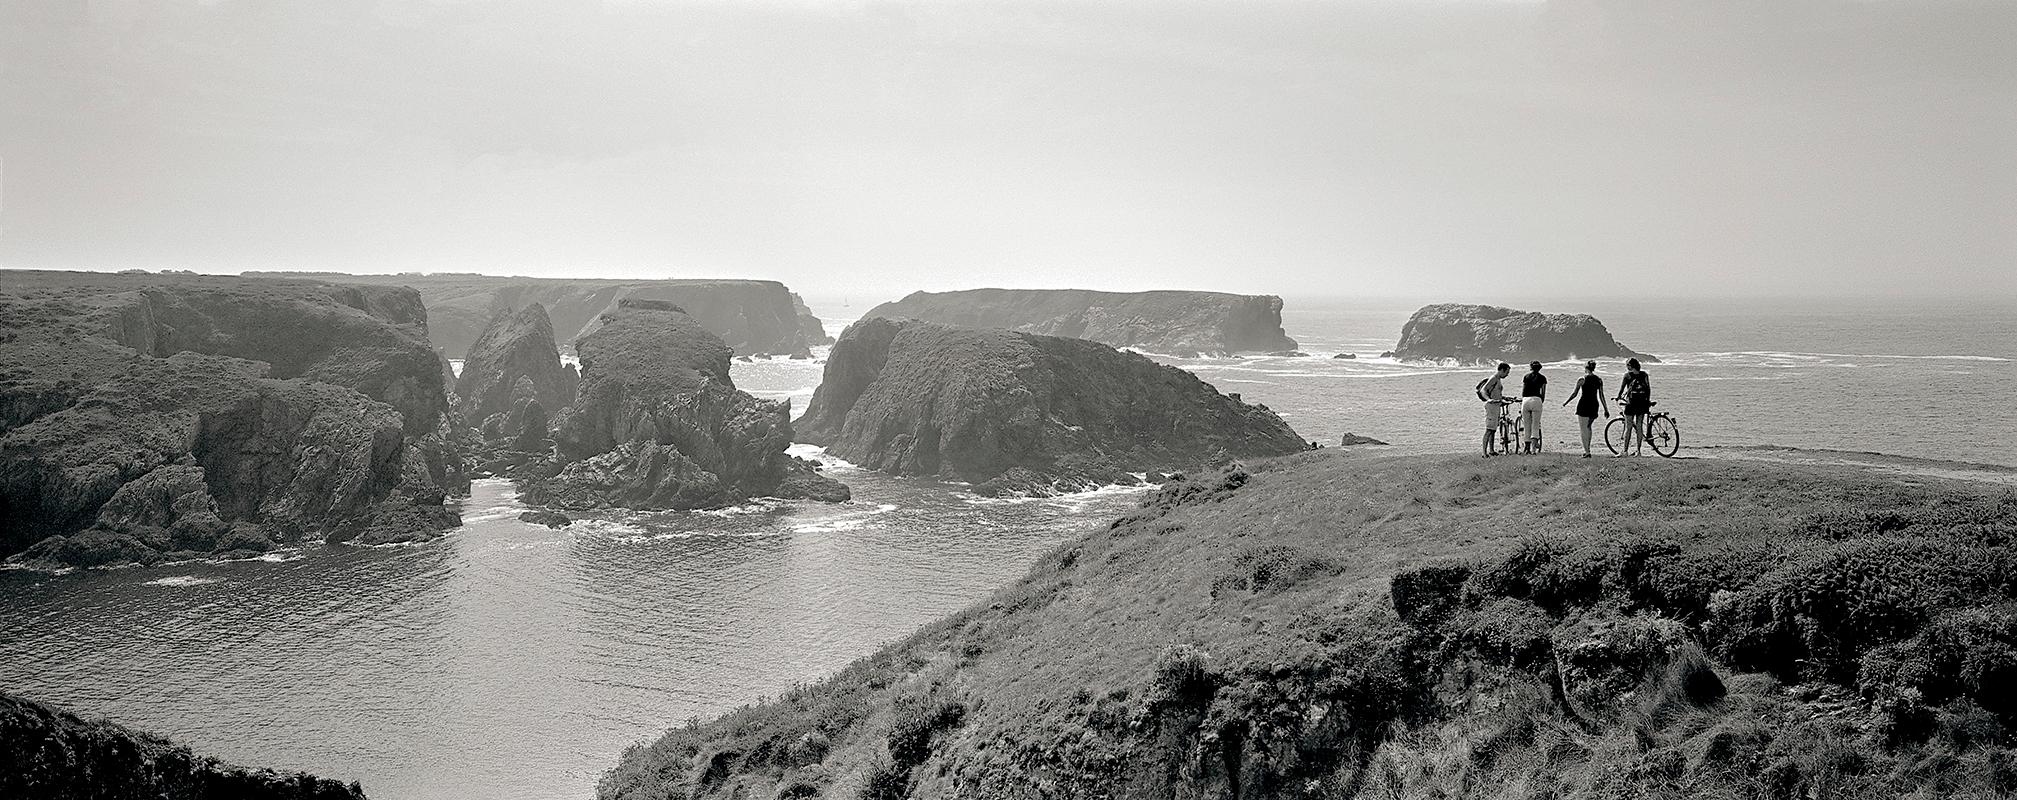 Panorama - photographies en noir et blanc, tirage en édition limitée, paysage